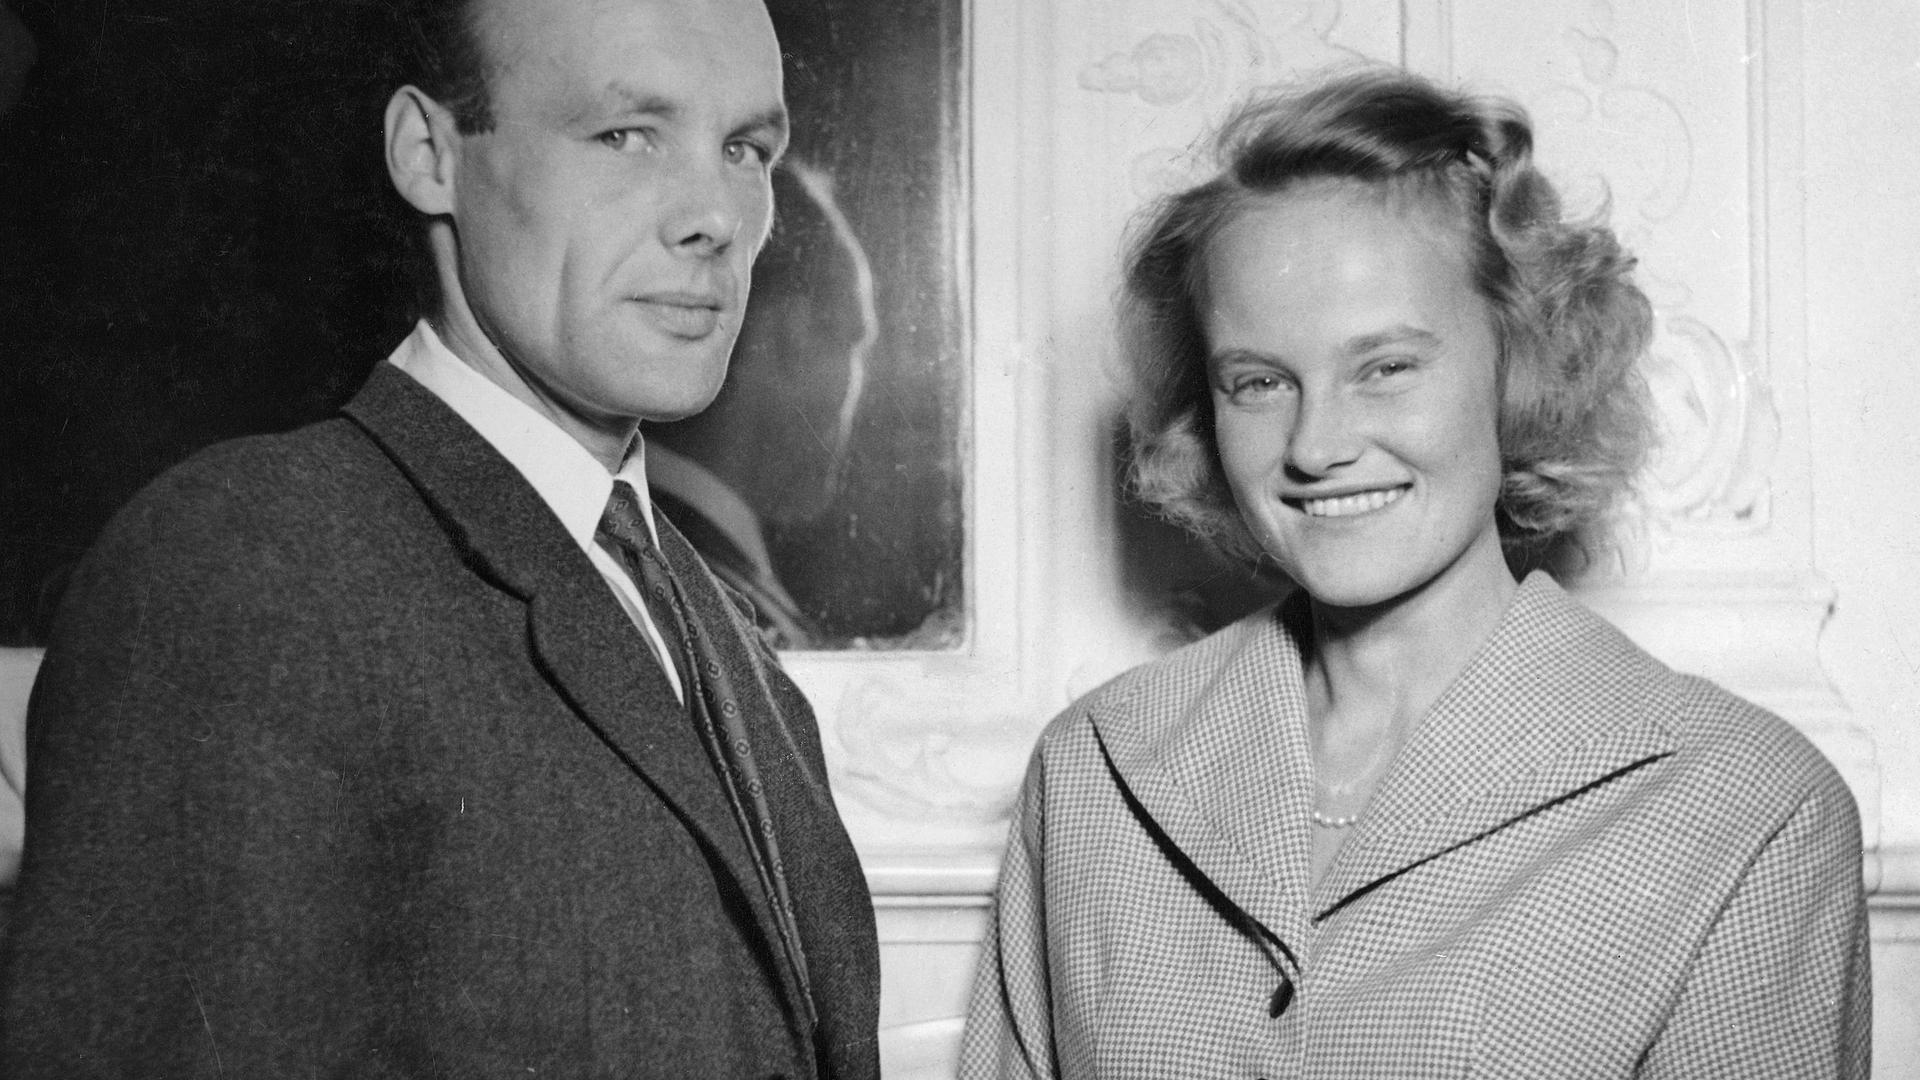 Marie-Gabrielle ao lado do marido, o conde Knud de Holstein-Ledreborg, em 1951, com 25 anos. 